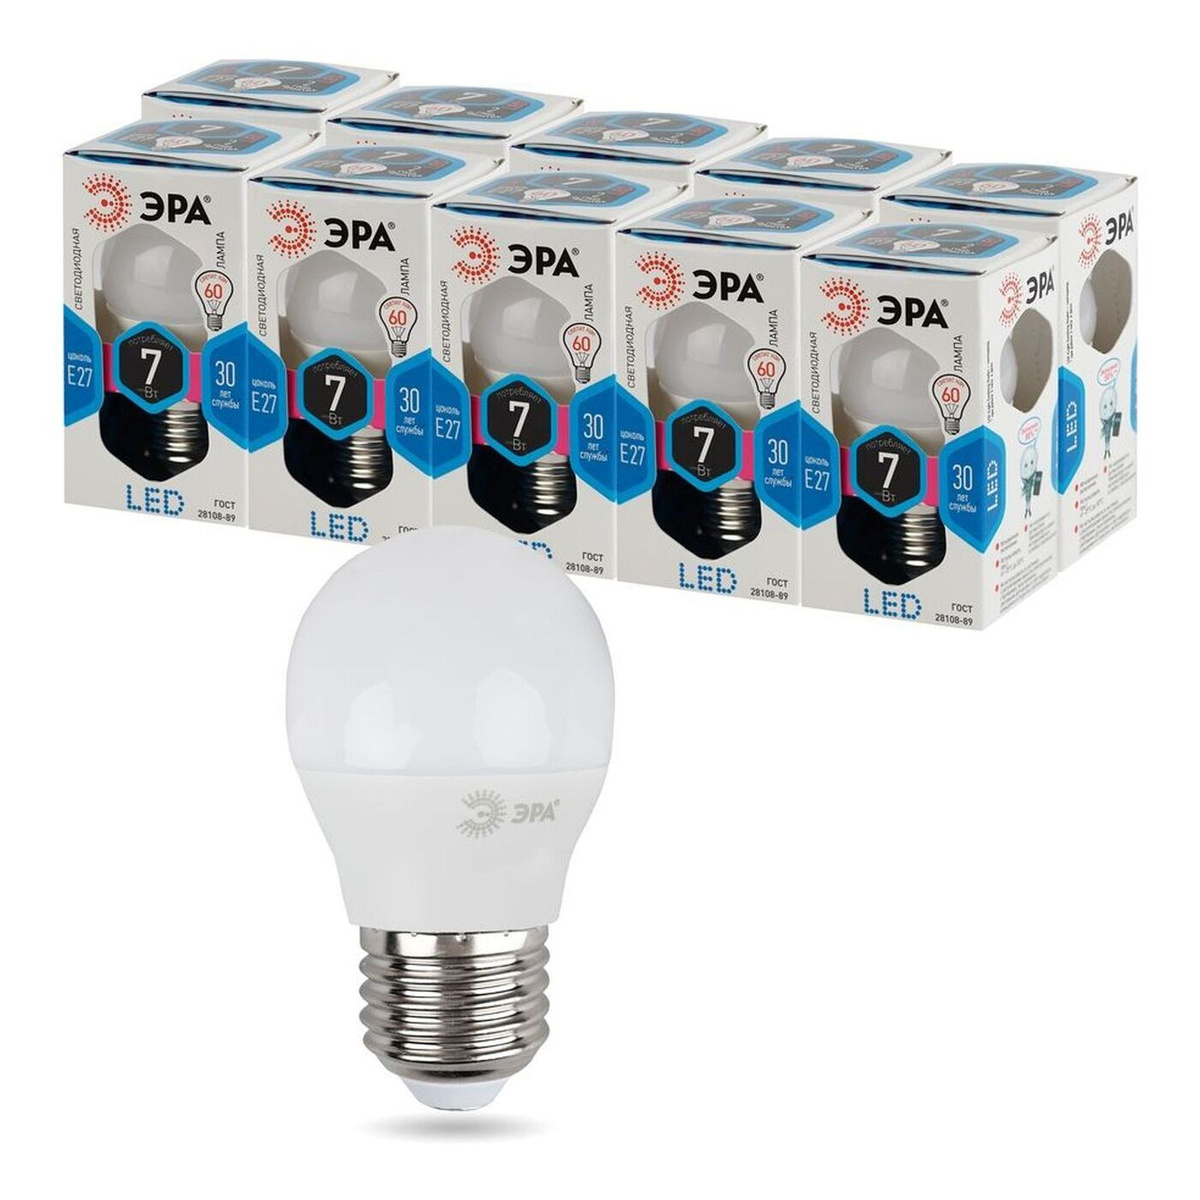 Лампочка ЭРА LED P45-7W-840-E27, Нейтральный белый свет, 7 Вт, Светодиодная, 10 шт.  #1